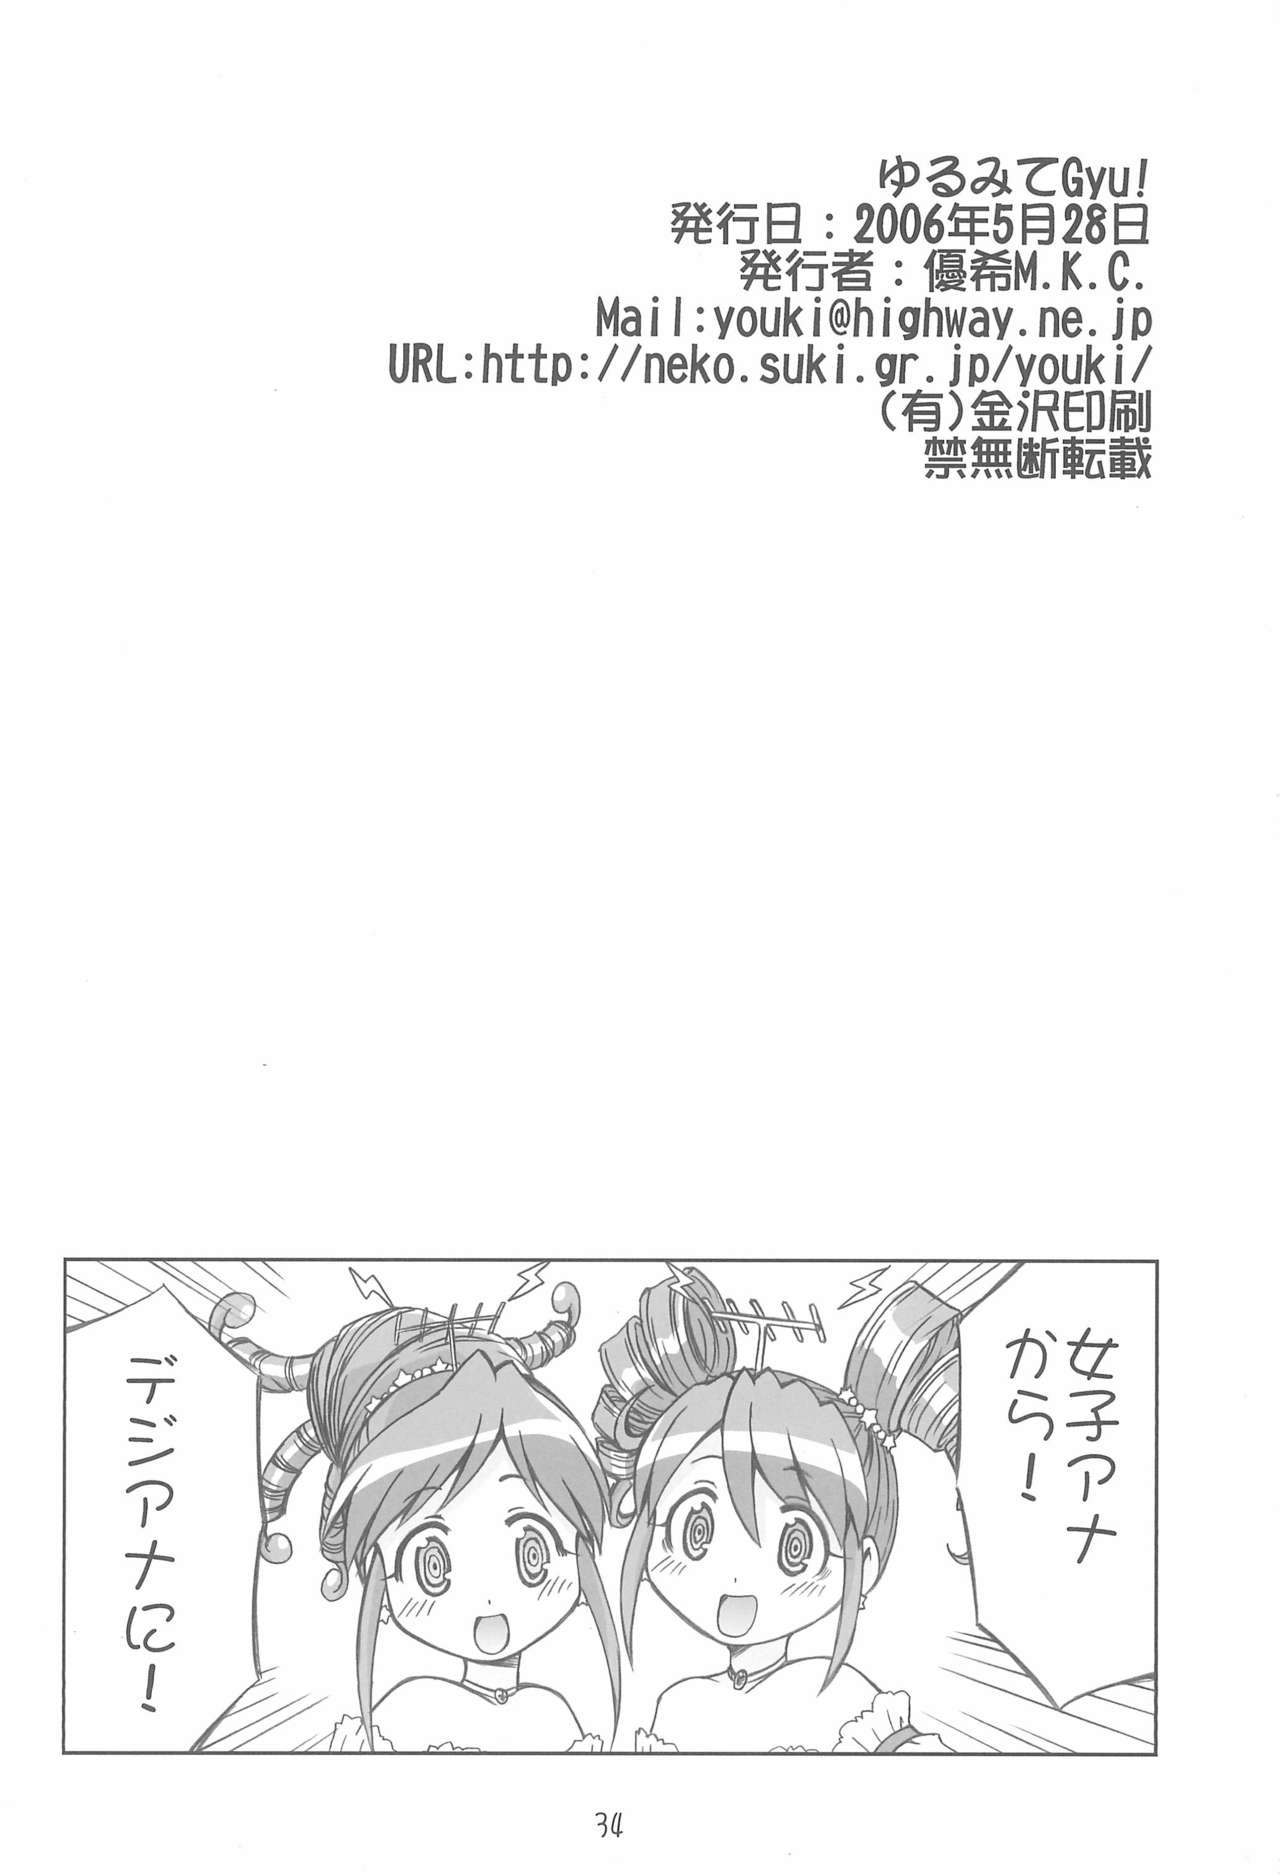 (Puniket 13) [Youki M.K.C. (Various)] Yurumite Gyu (Fushigiboshi no Futago Hime) page 34 full